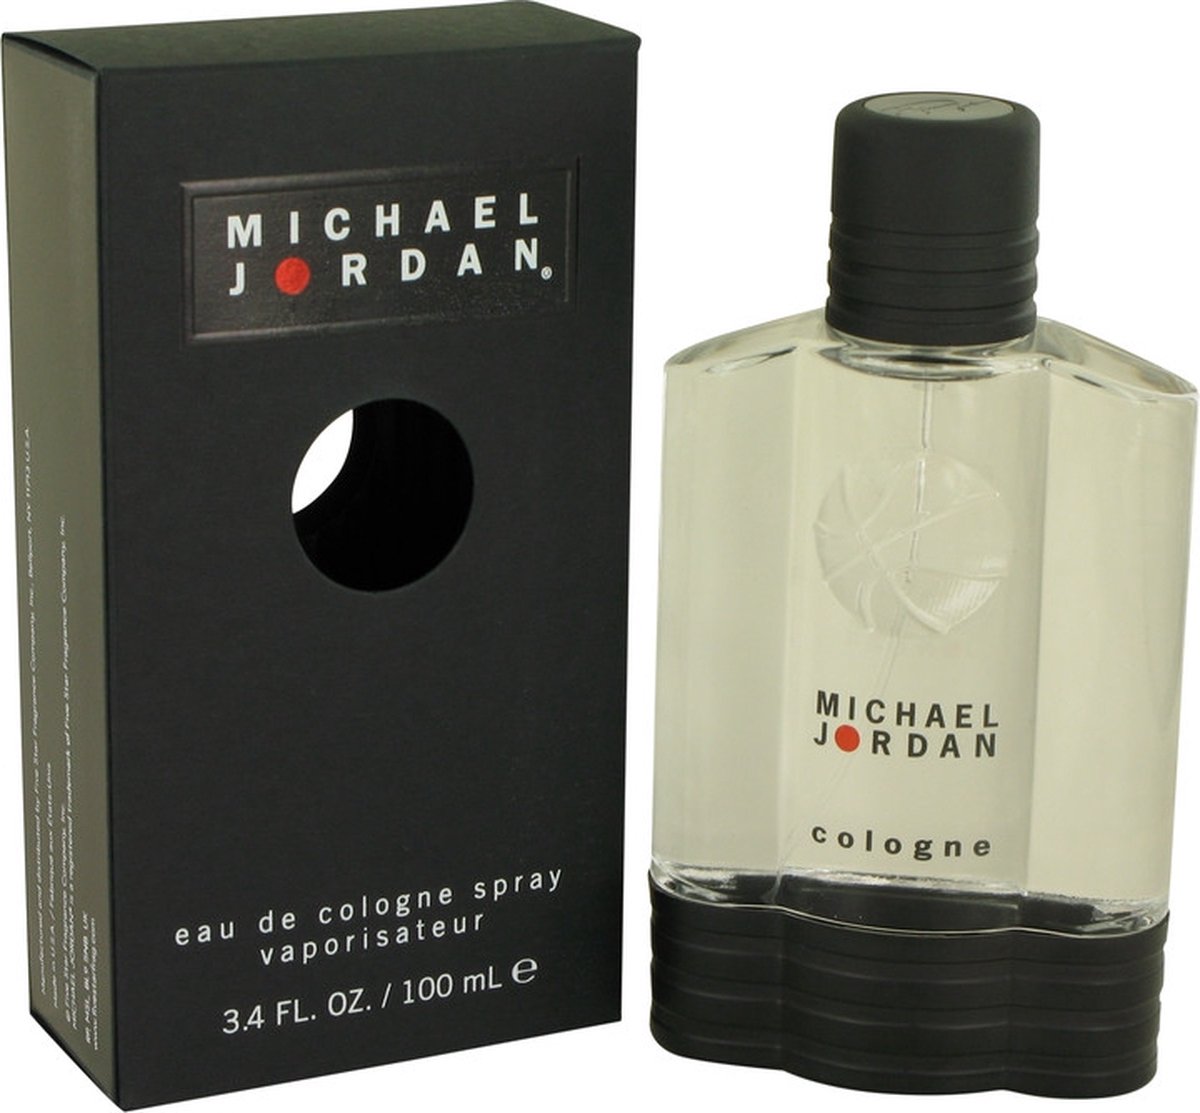 MICHAEL JORDAN by Michael Jordan 100 ml - Cologne Spray